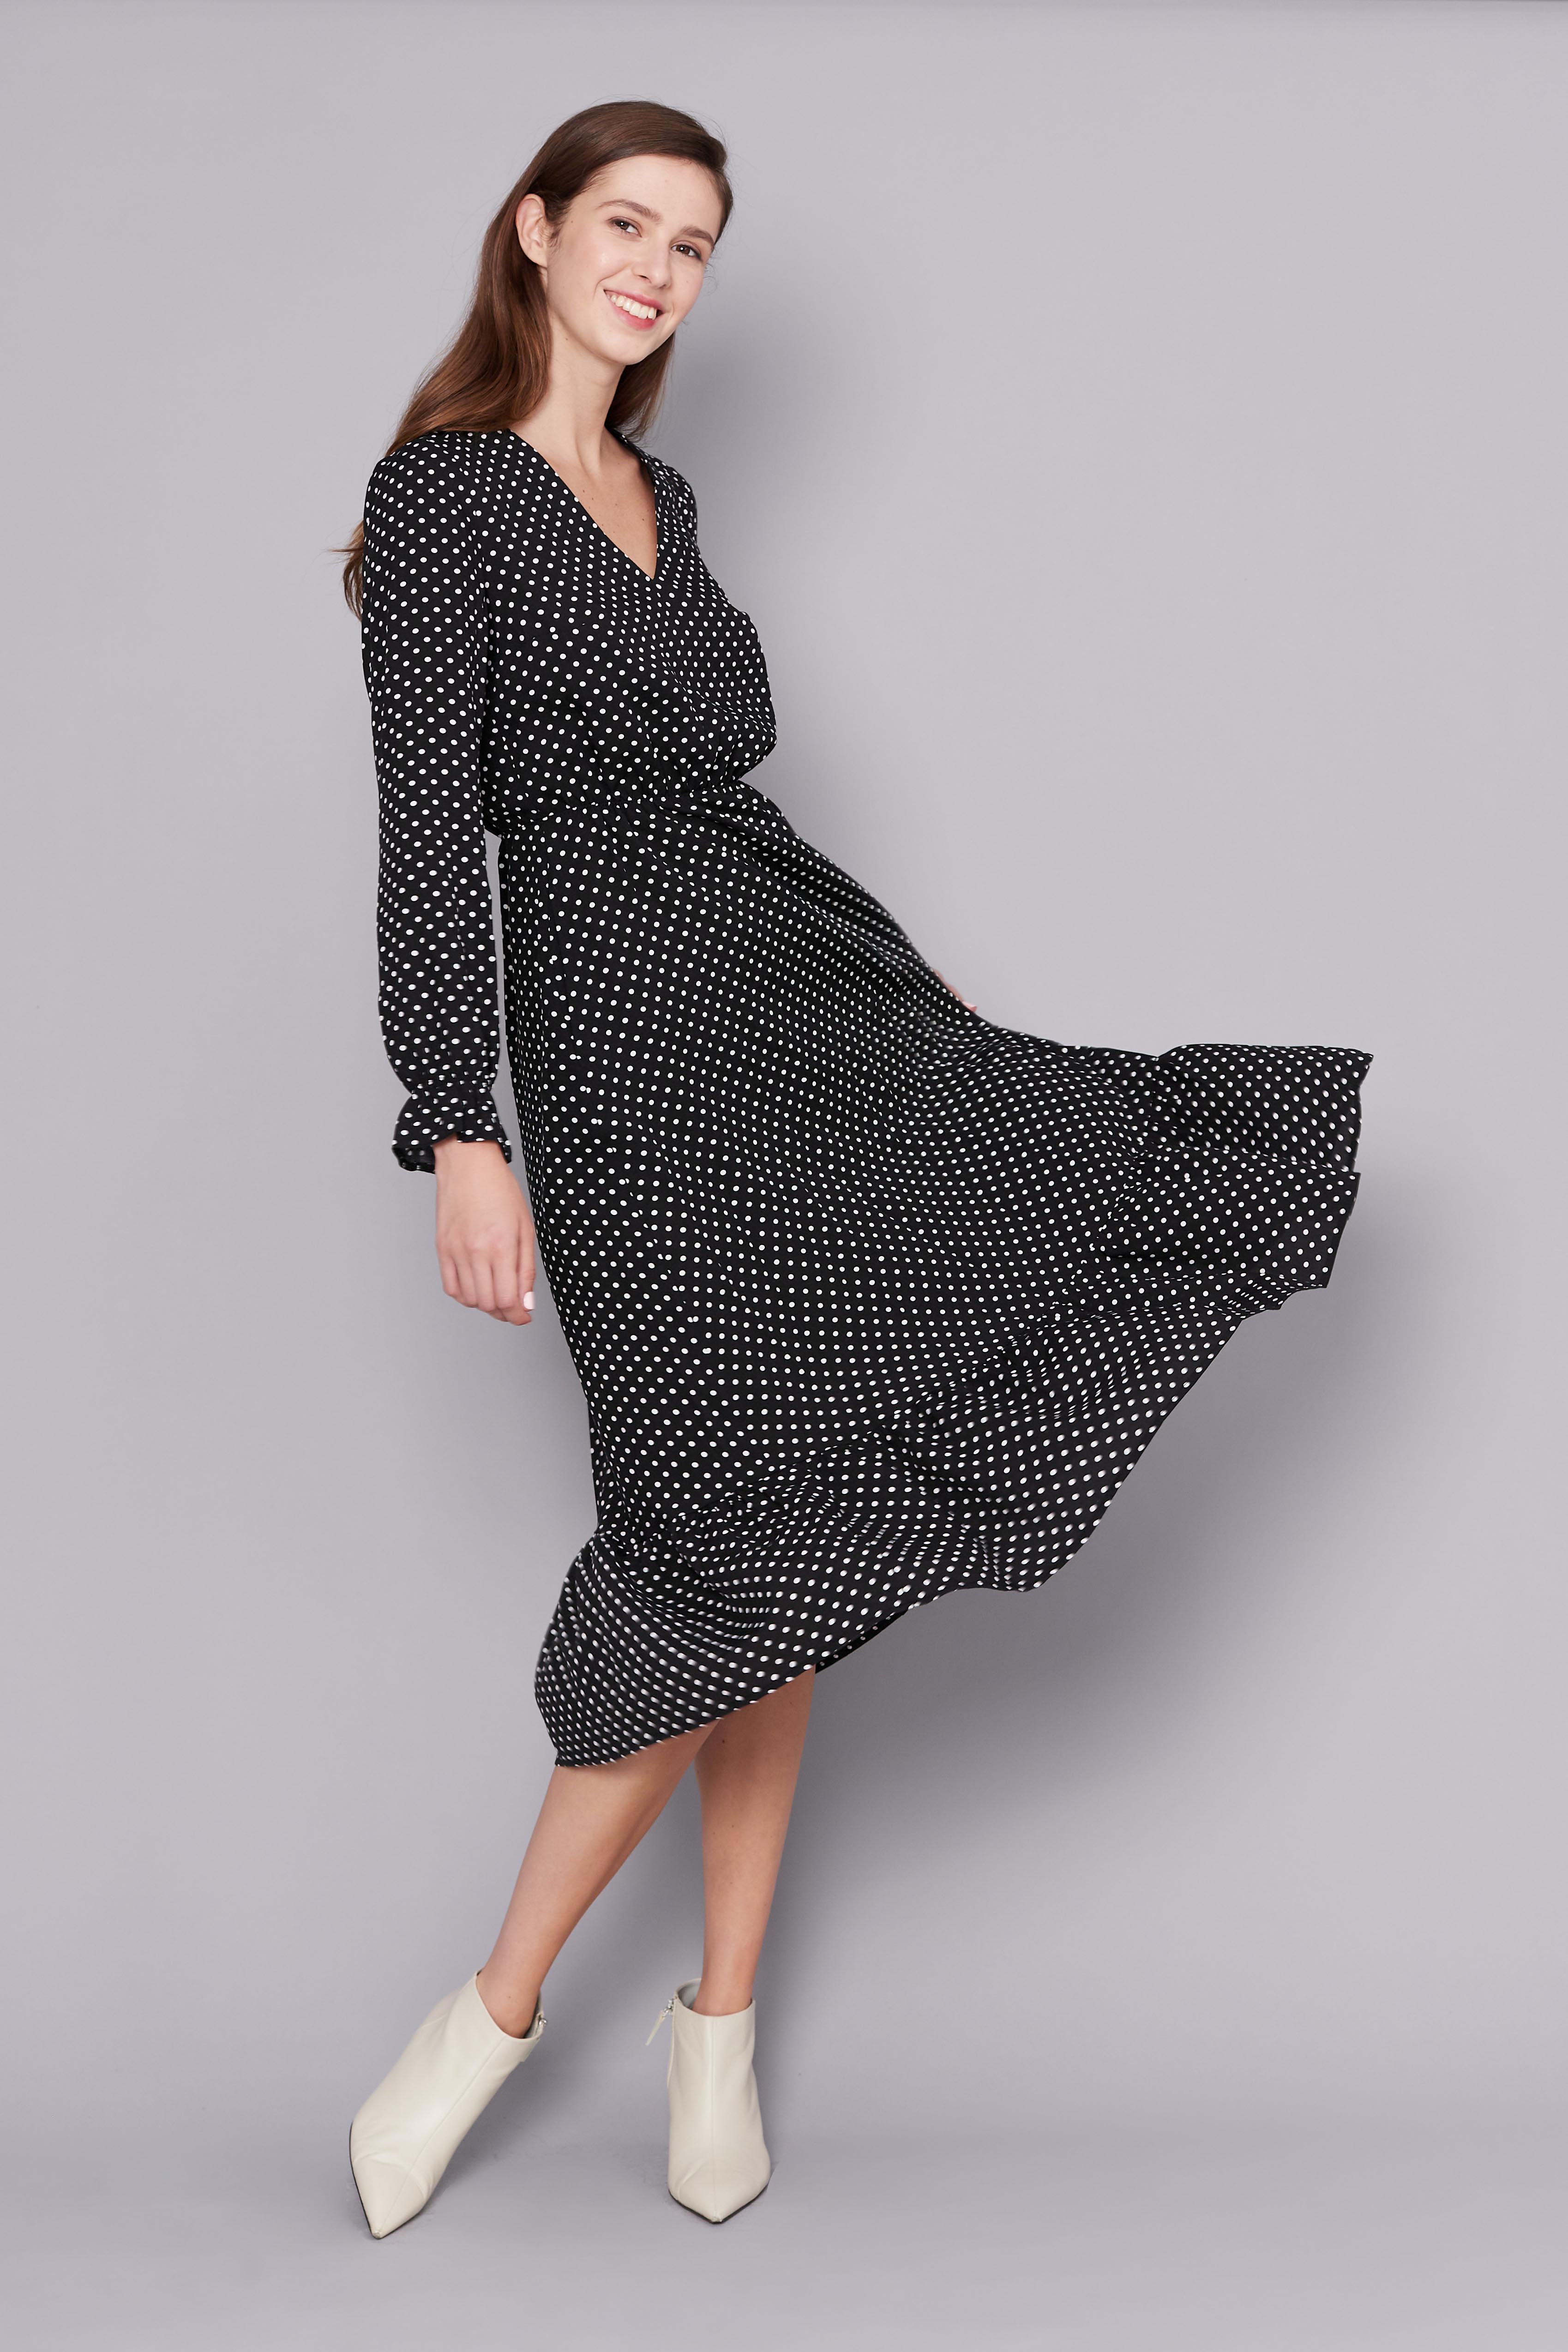 Black polka dot midi dress, photo 1